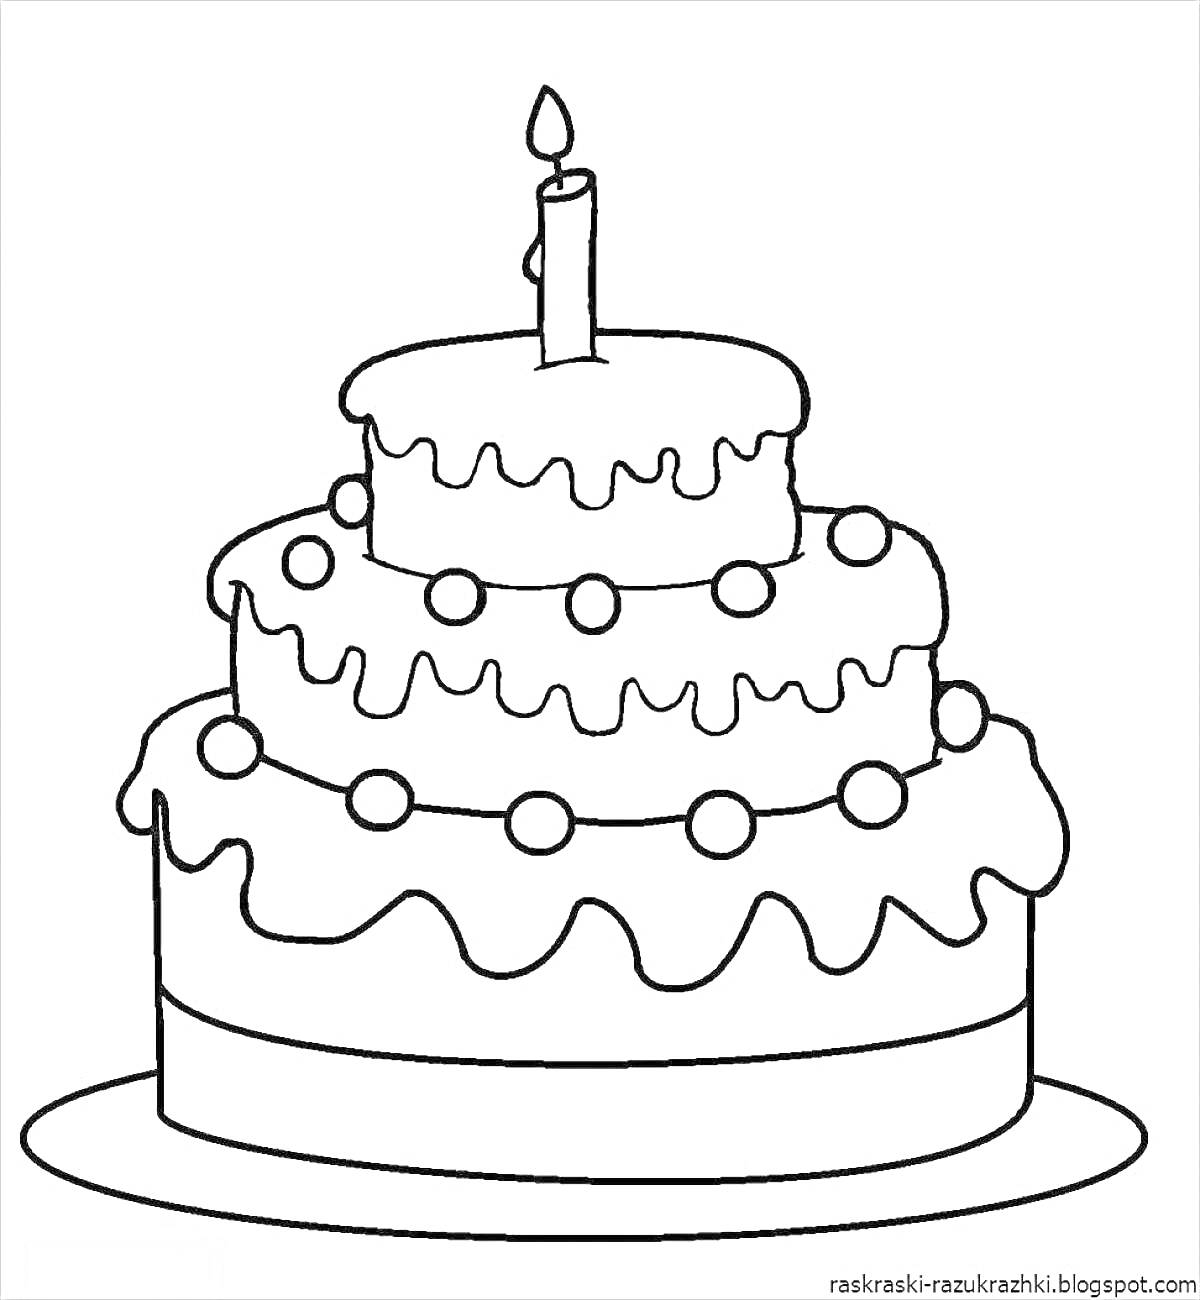 Раскраска Трёхъярусный торт с глазурью, шариками и свечой на вершине